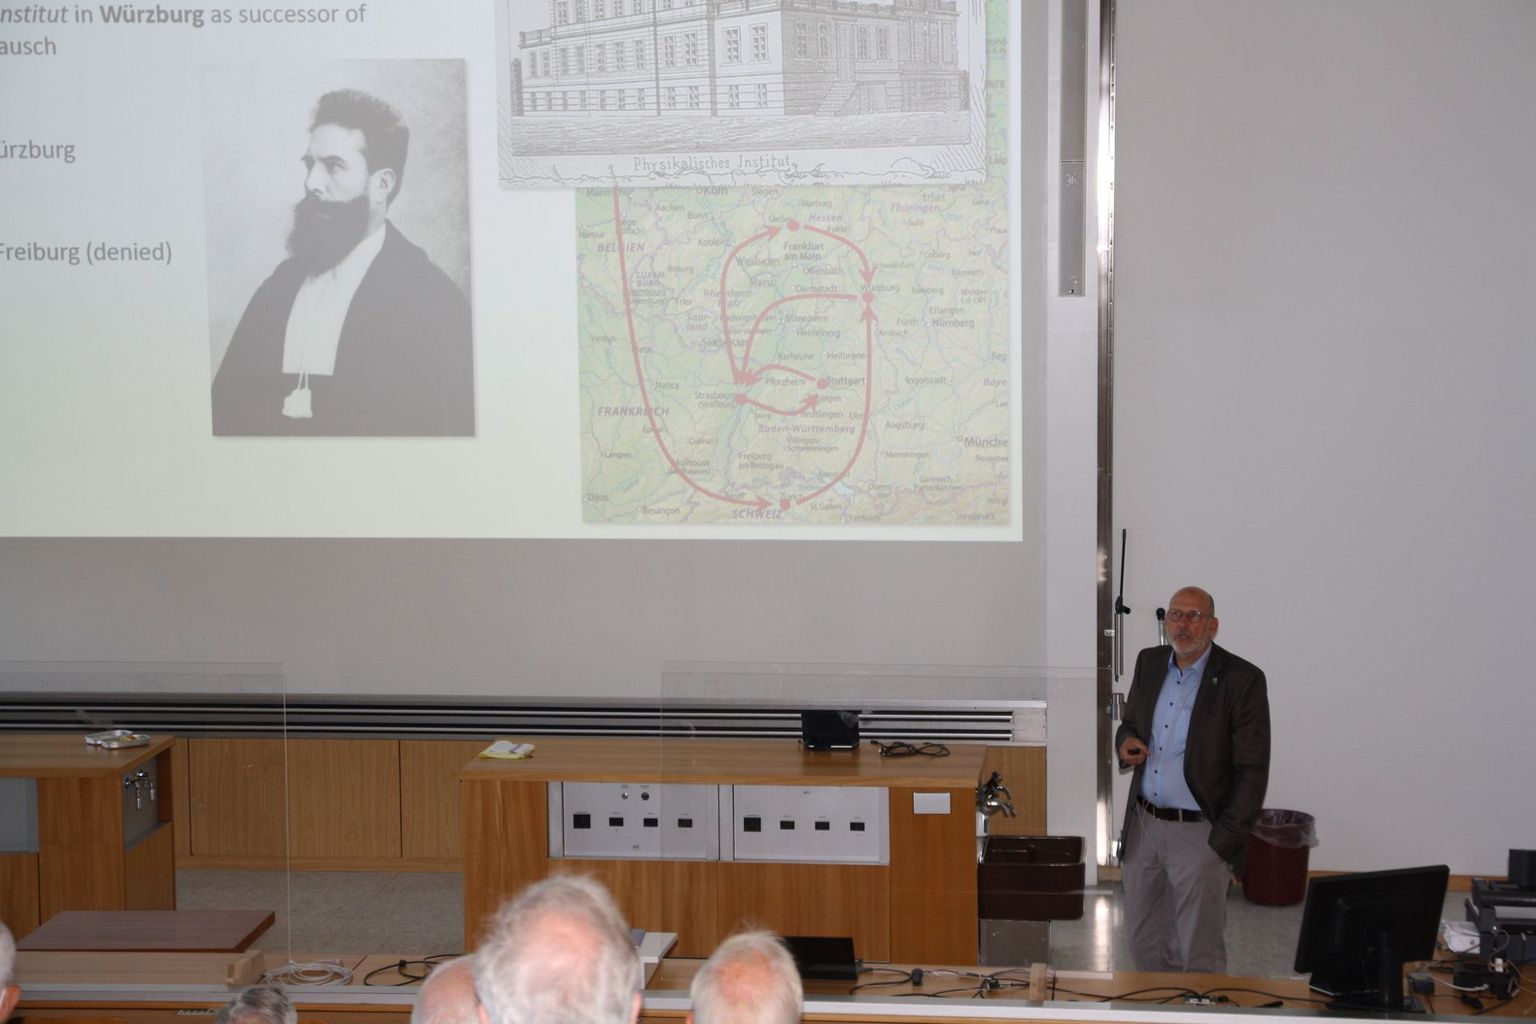 Le professeur Ralph Claessen, de l'université de Würzburg, décrit la carrière de Röntgen.